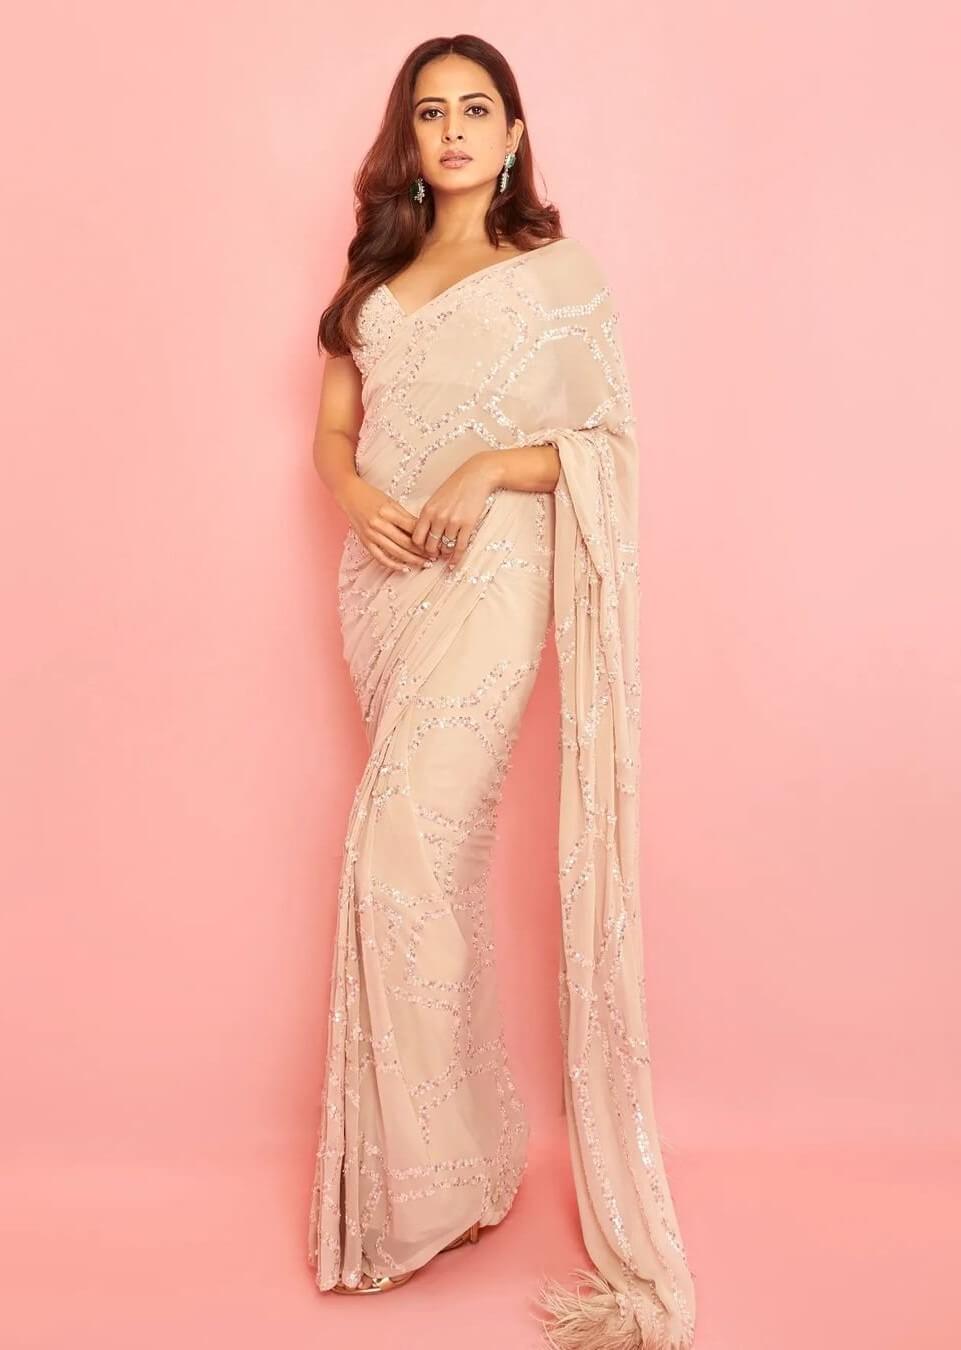 Sargun Mehta Epitome Of Elegance In White Embellished Saree